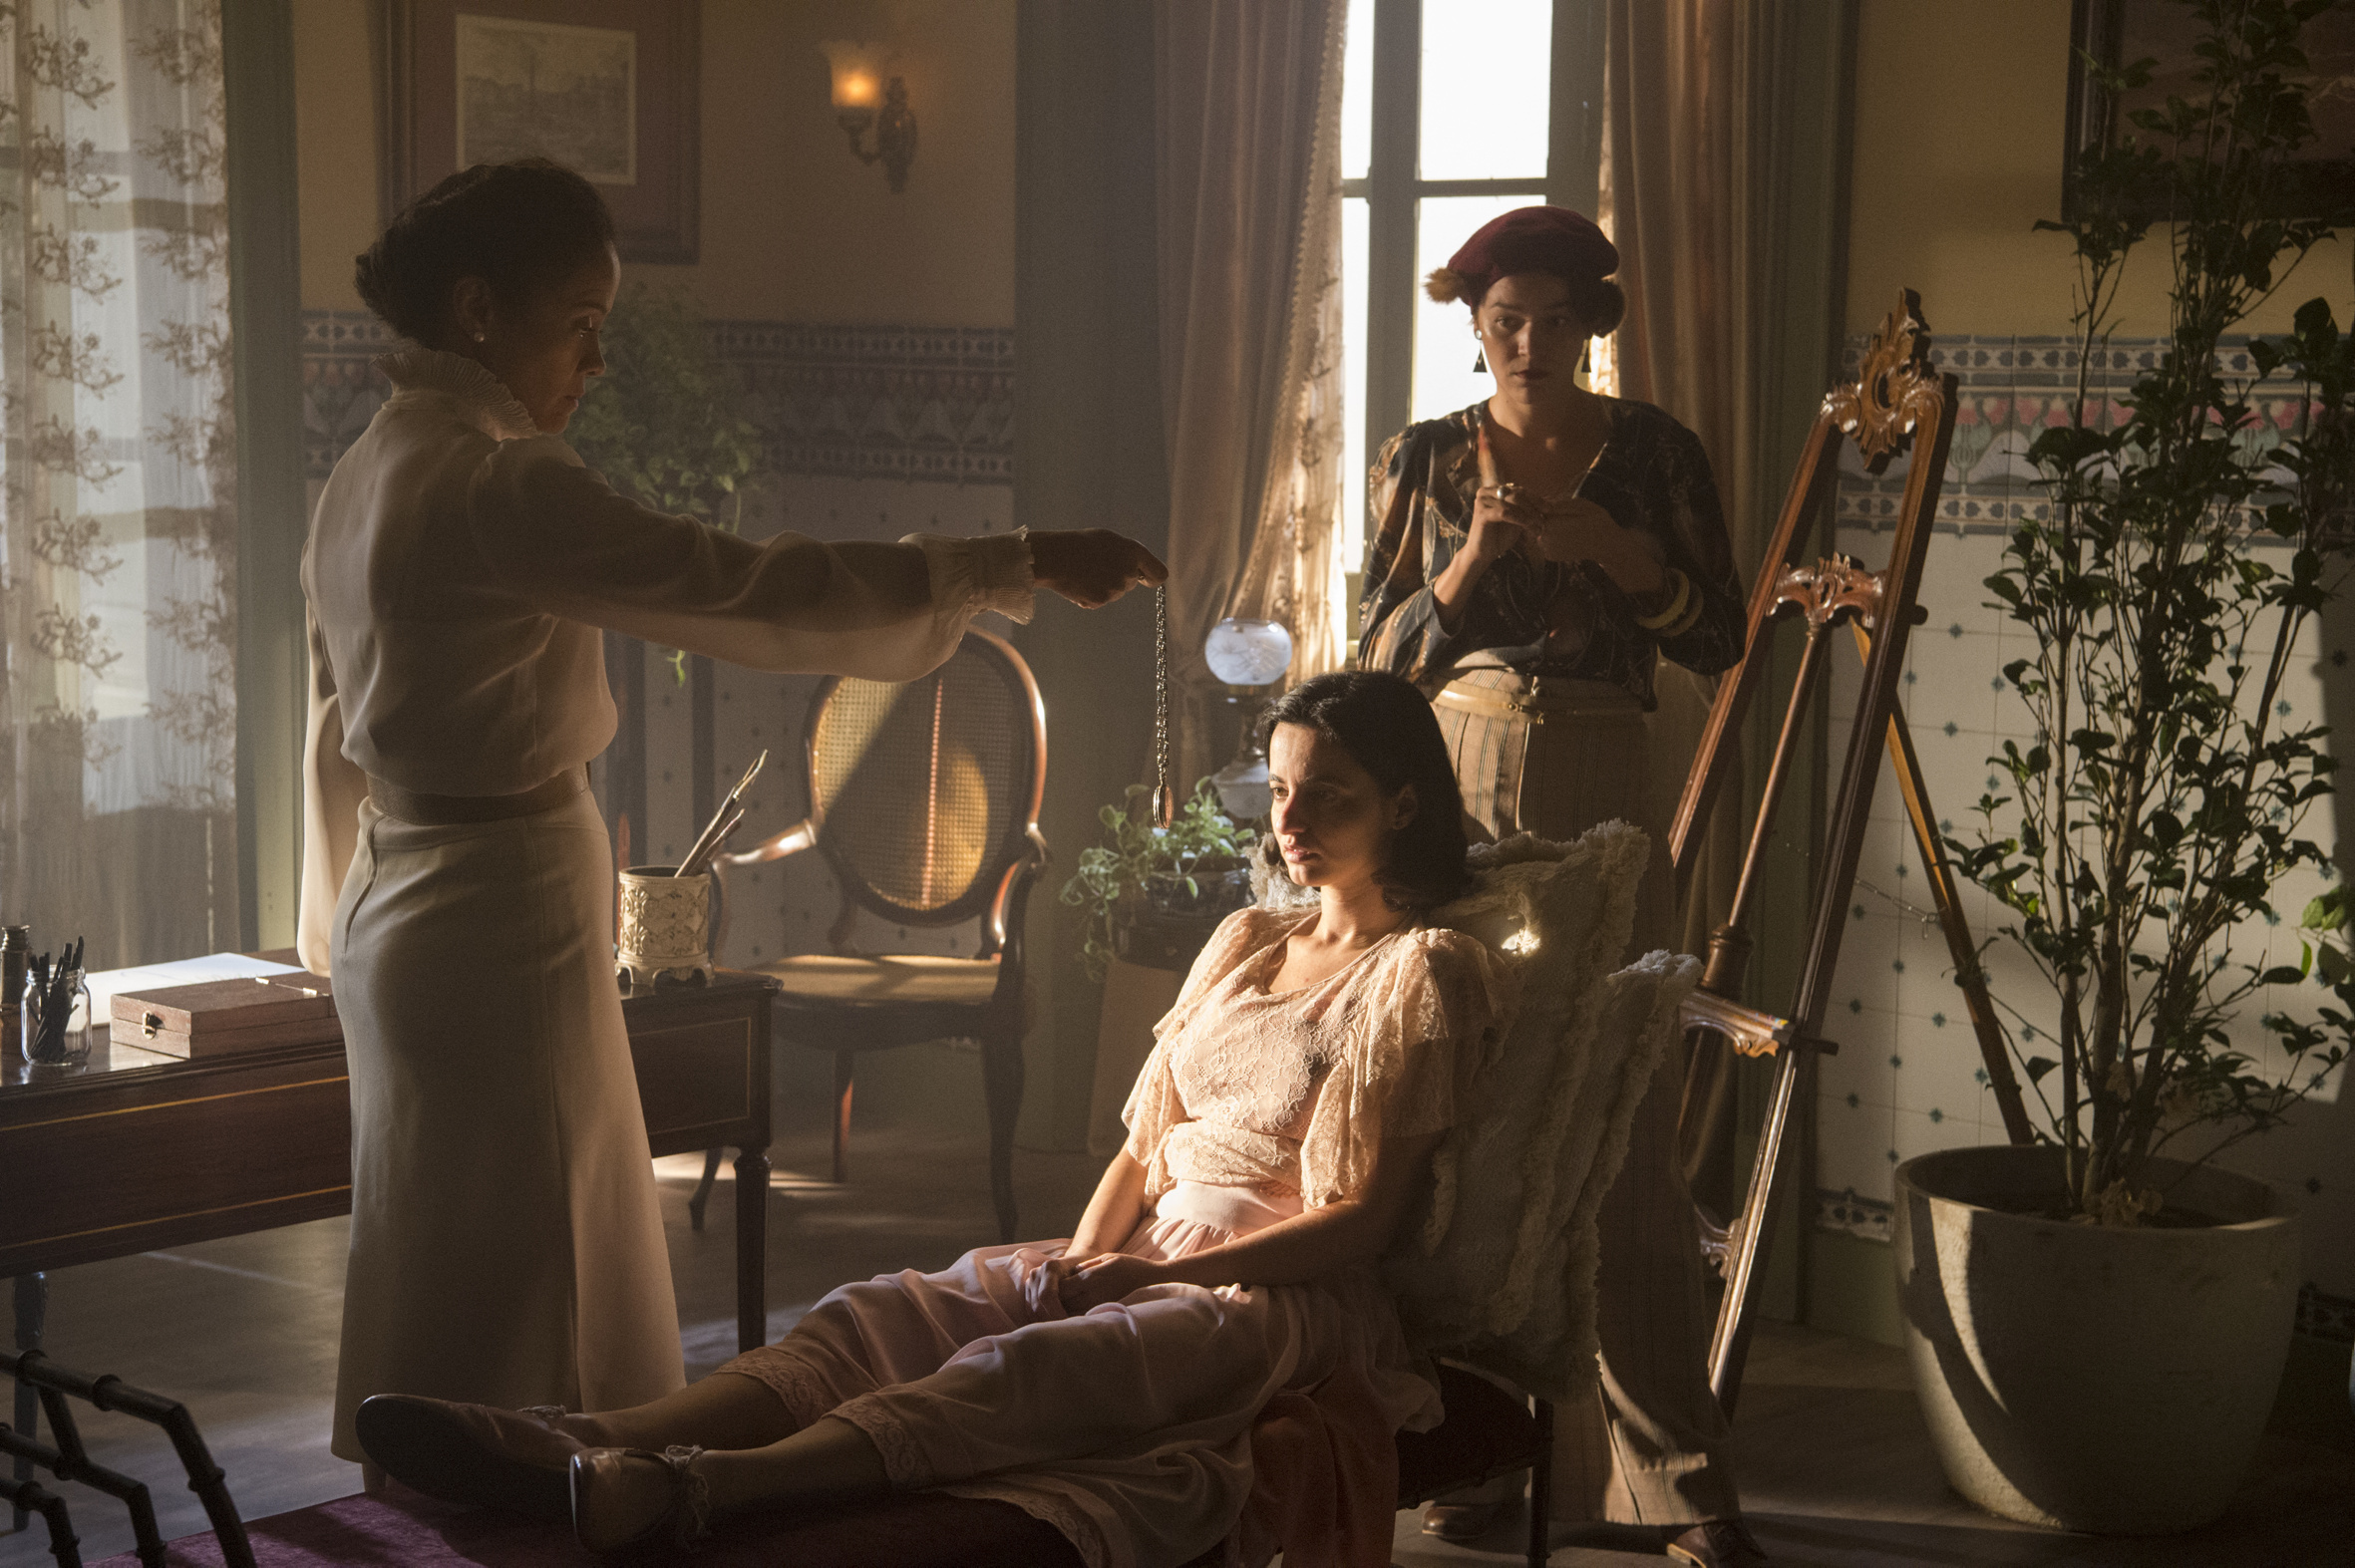 Dra. Selma (Aline Borges) vai começar uma sessão de hipnose com Justina (Julia Stockler). Adelaide (Joana de Verona) está com elas.